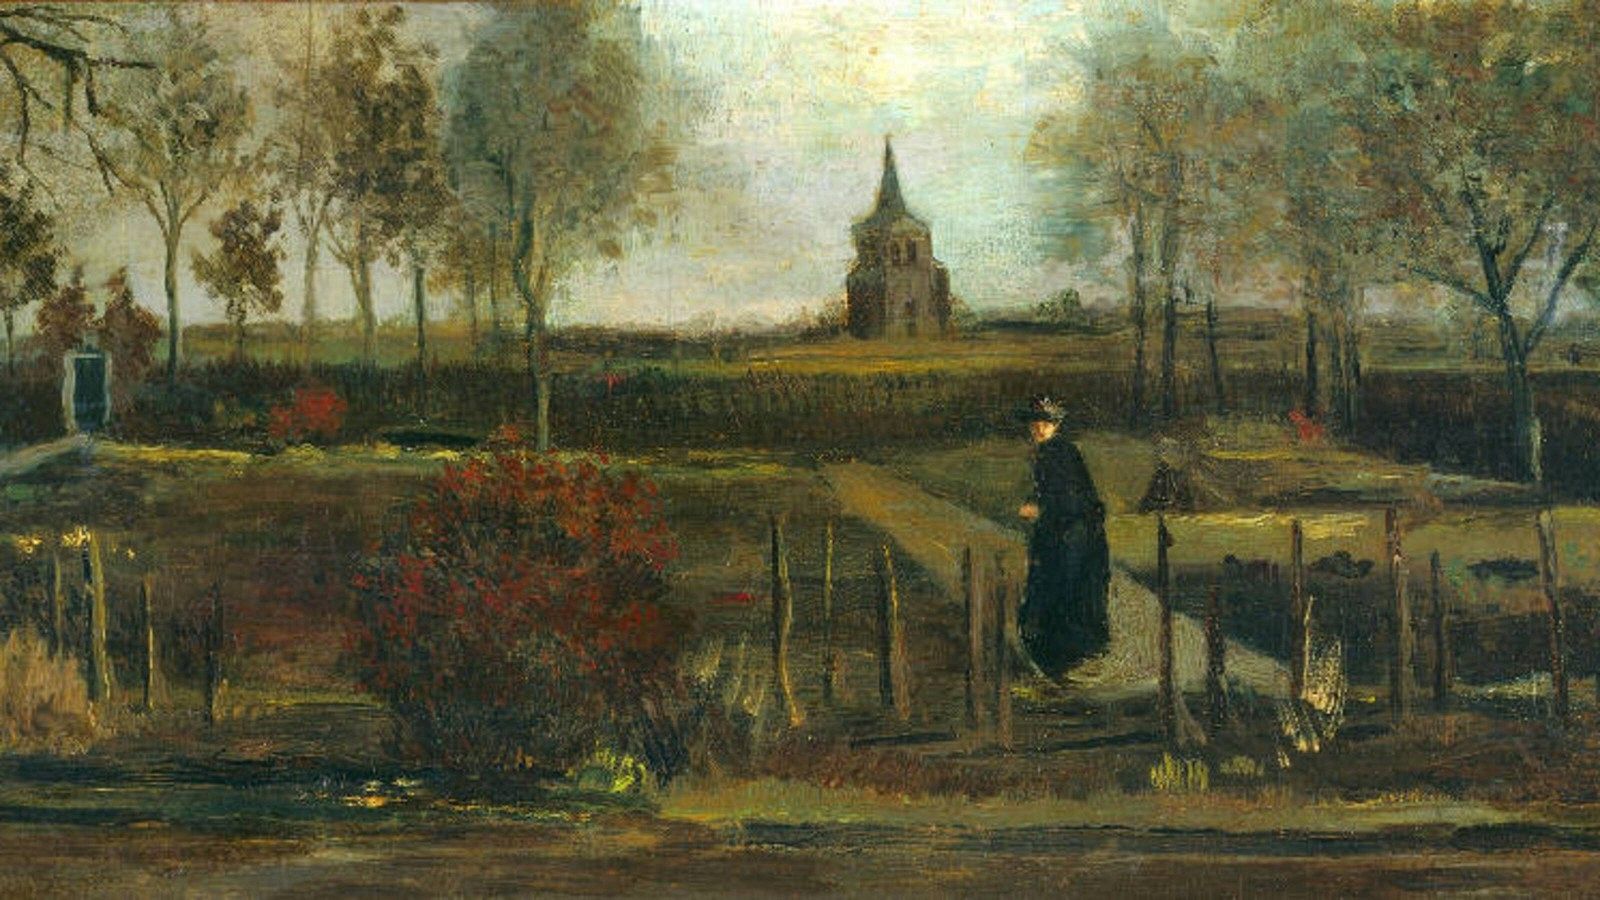 Detalle del cuadro 'Spring garden', de Van Gogh